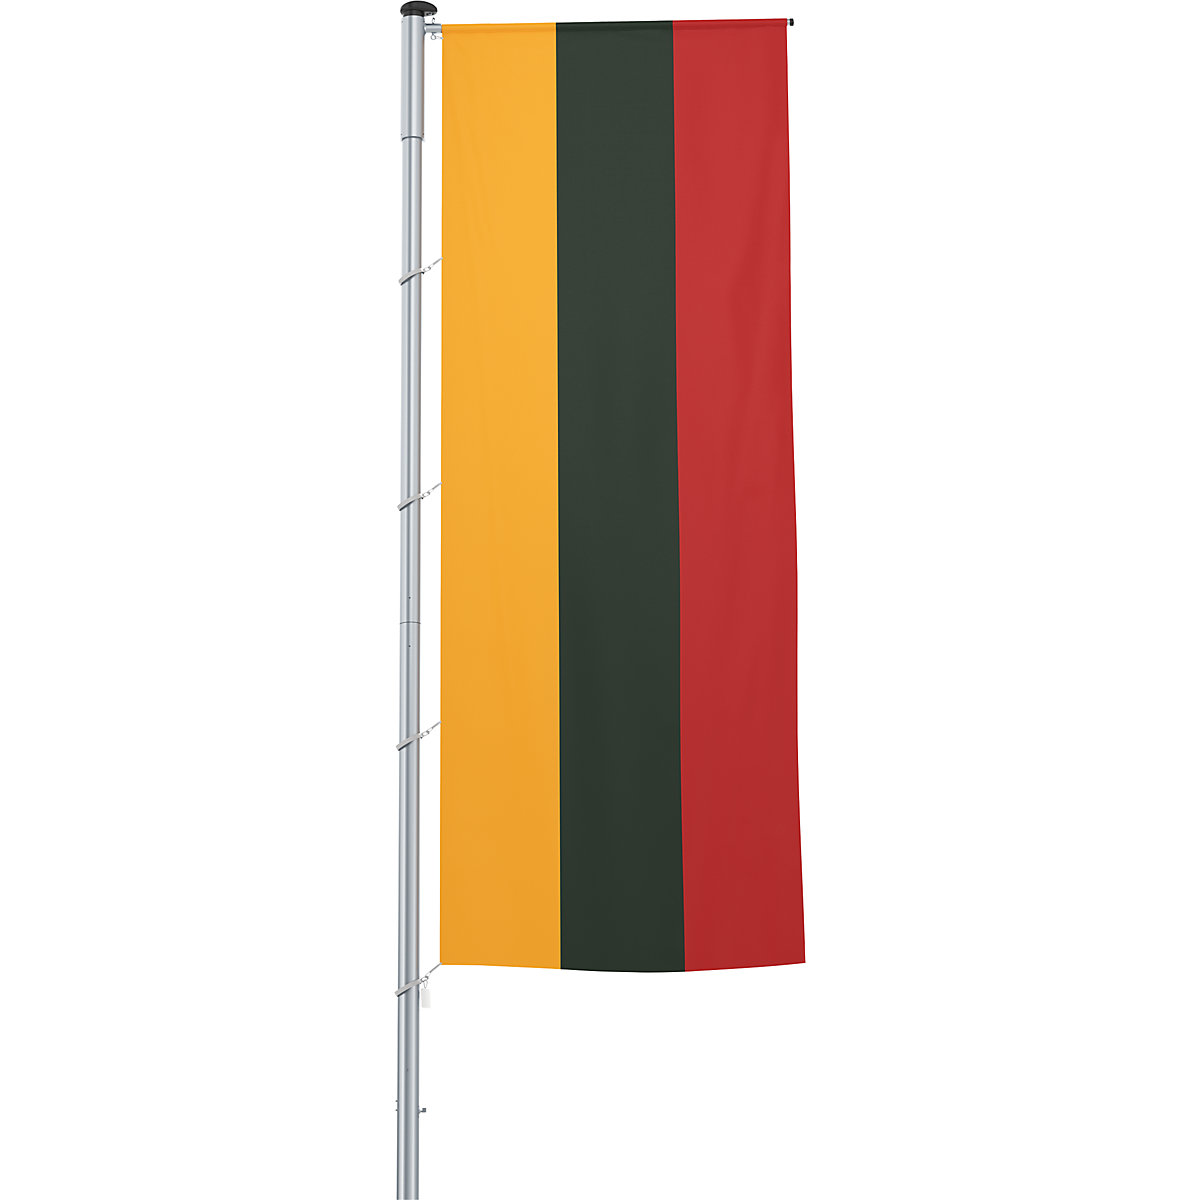 Vlajka na pozdĺžne upevnenie na stožiar/národná vlajka – Mannus, formát 1,2 x 3 m, Litva-10